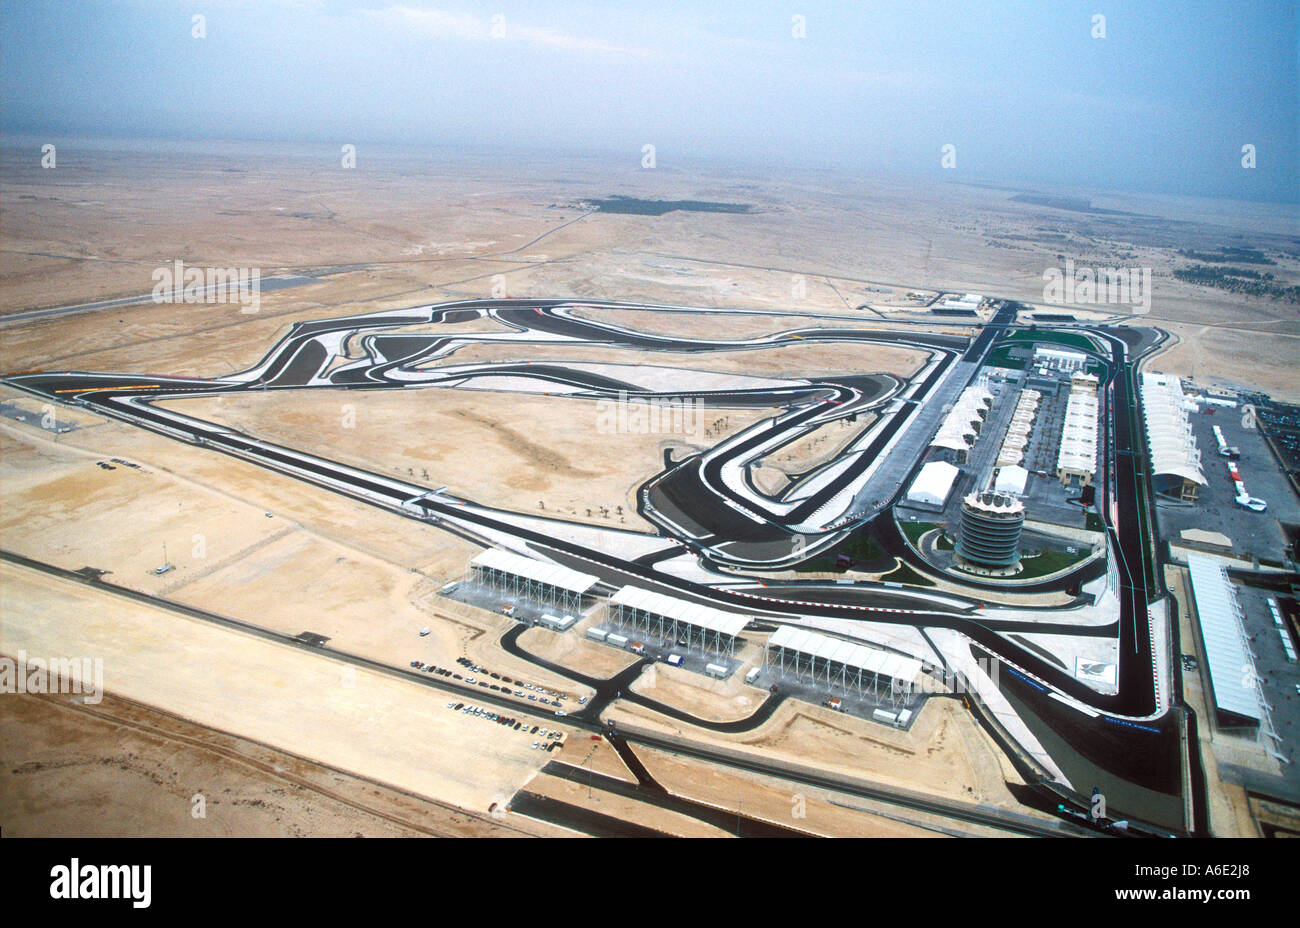 Le Circuit de Course International de Bahreïn vue aérienne Banque D'Images